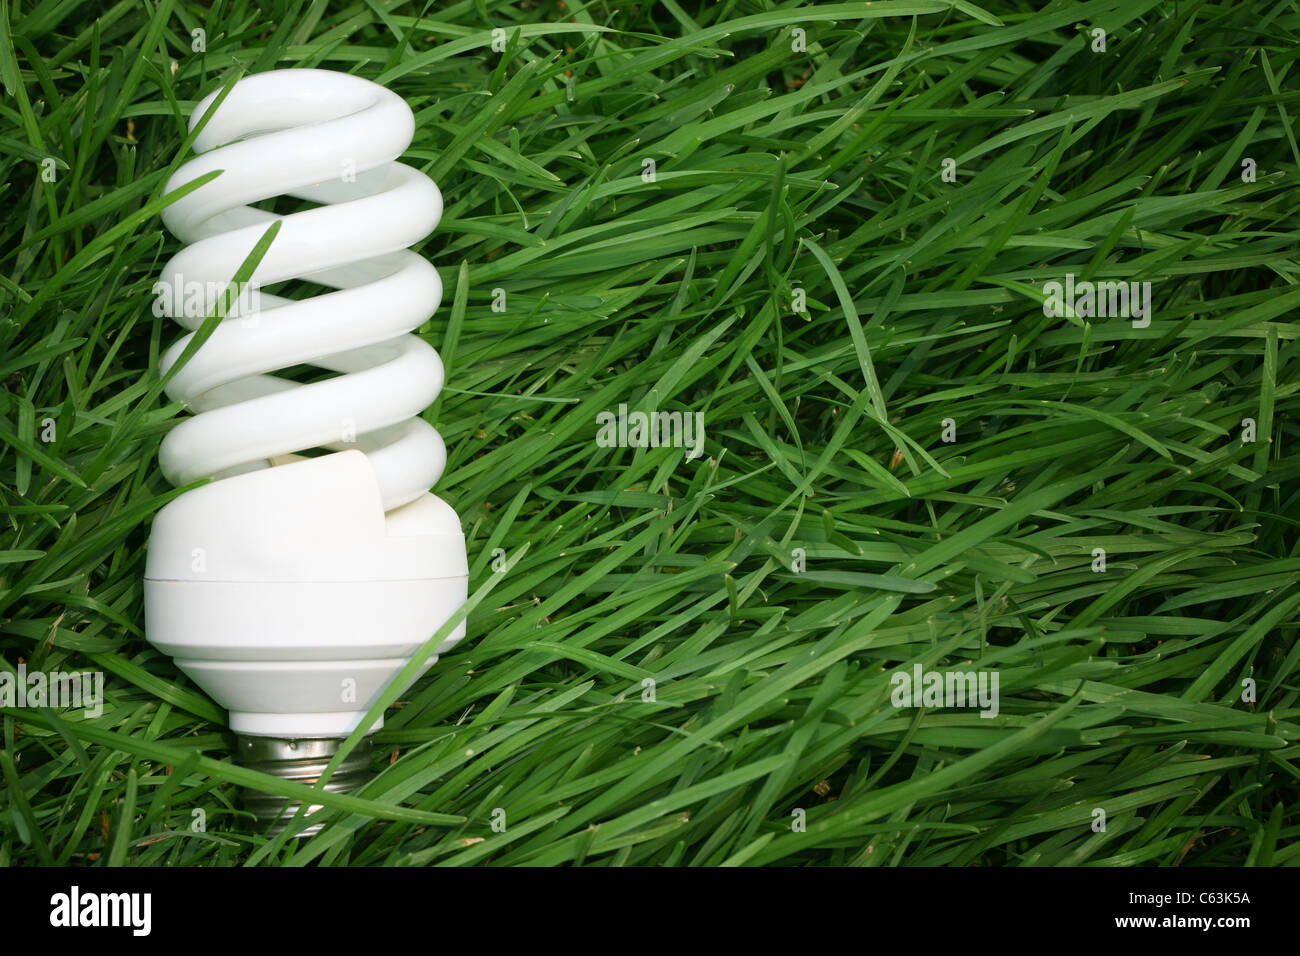 Lampada a risparmio energetico su erba verde,risparmio energetico concetto. Foto Stock